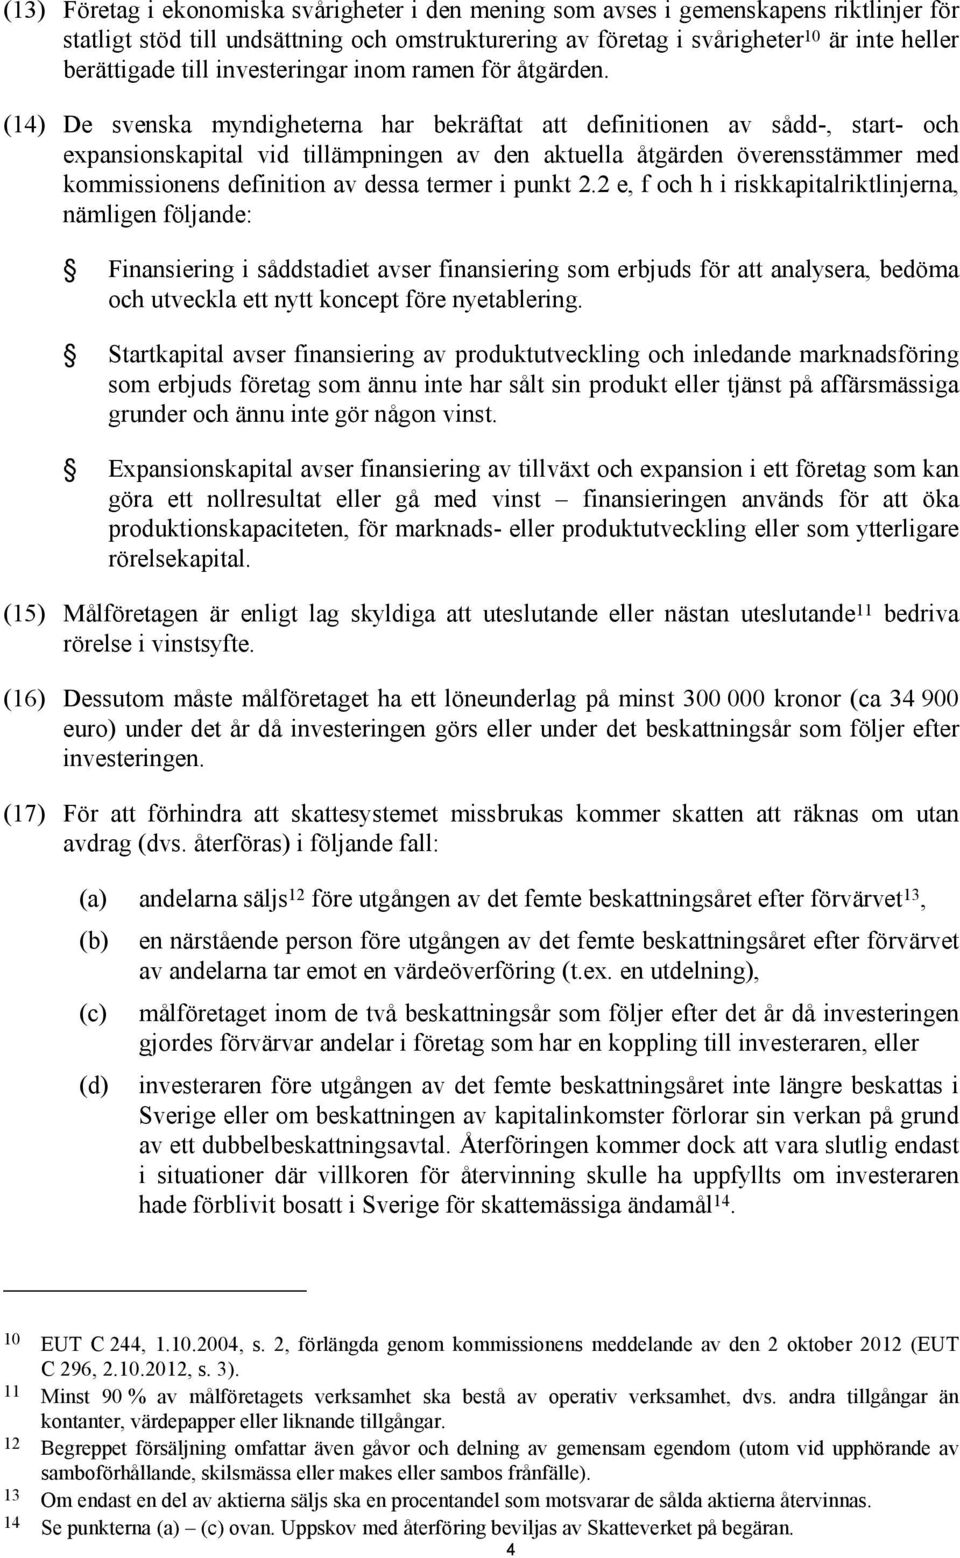 (14) De svenska myndigheterna har bekräftat att definitionen av sådd-, start- och expansionskapital vid tillämpningen av den aktuella åtgärden överensstämmer med kommissionens definition av dessa